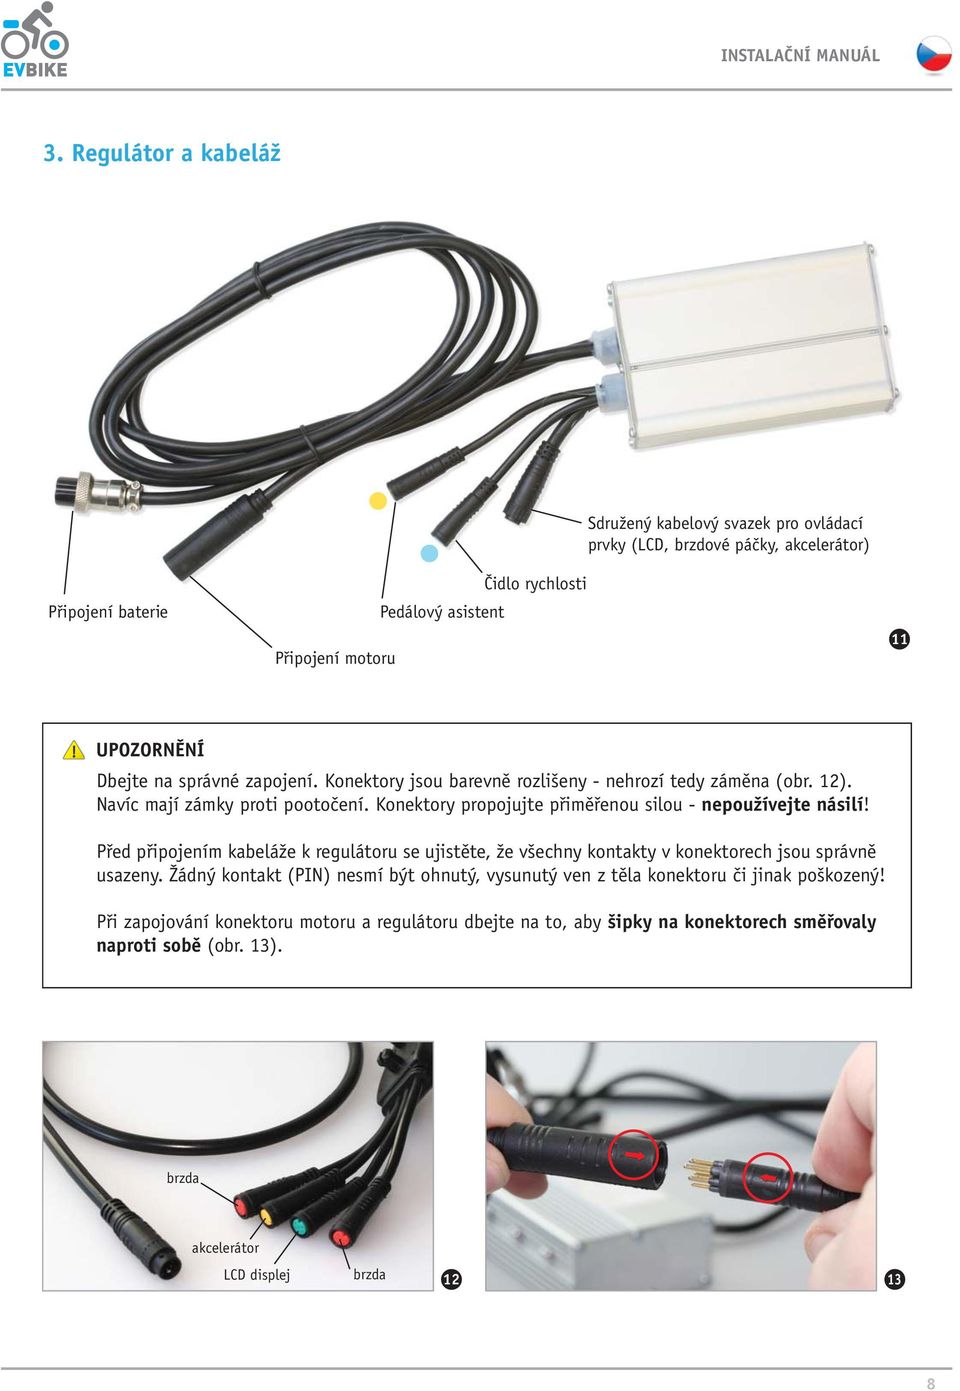 Konektory propojujte přiměřenou silou - nepoužívejte násilí! Před připojením kabeláže k regulátoru se ujistěte, že všechny kontakty v konektorech jsou správně usazeny.